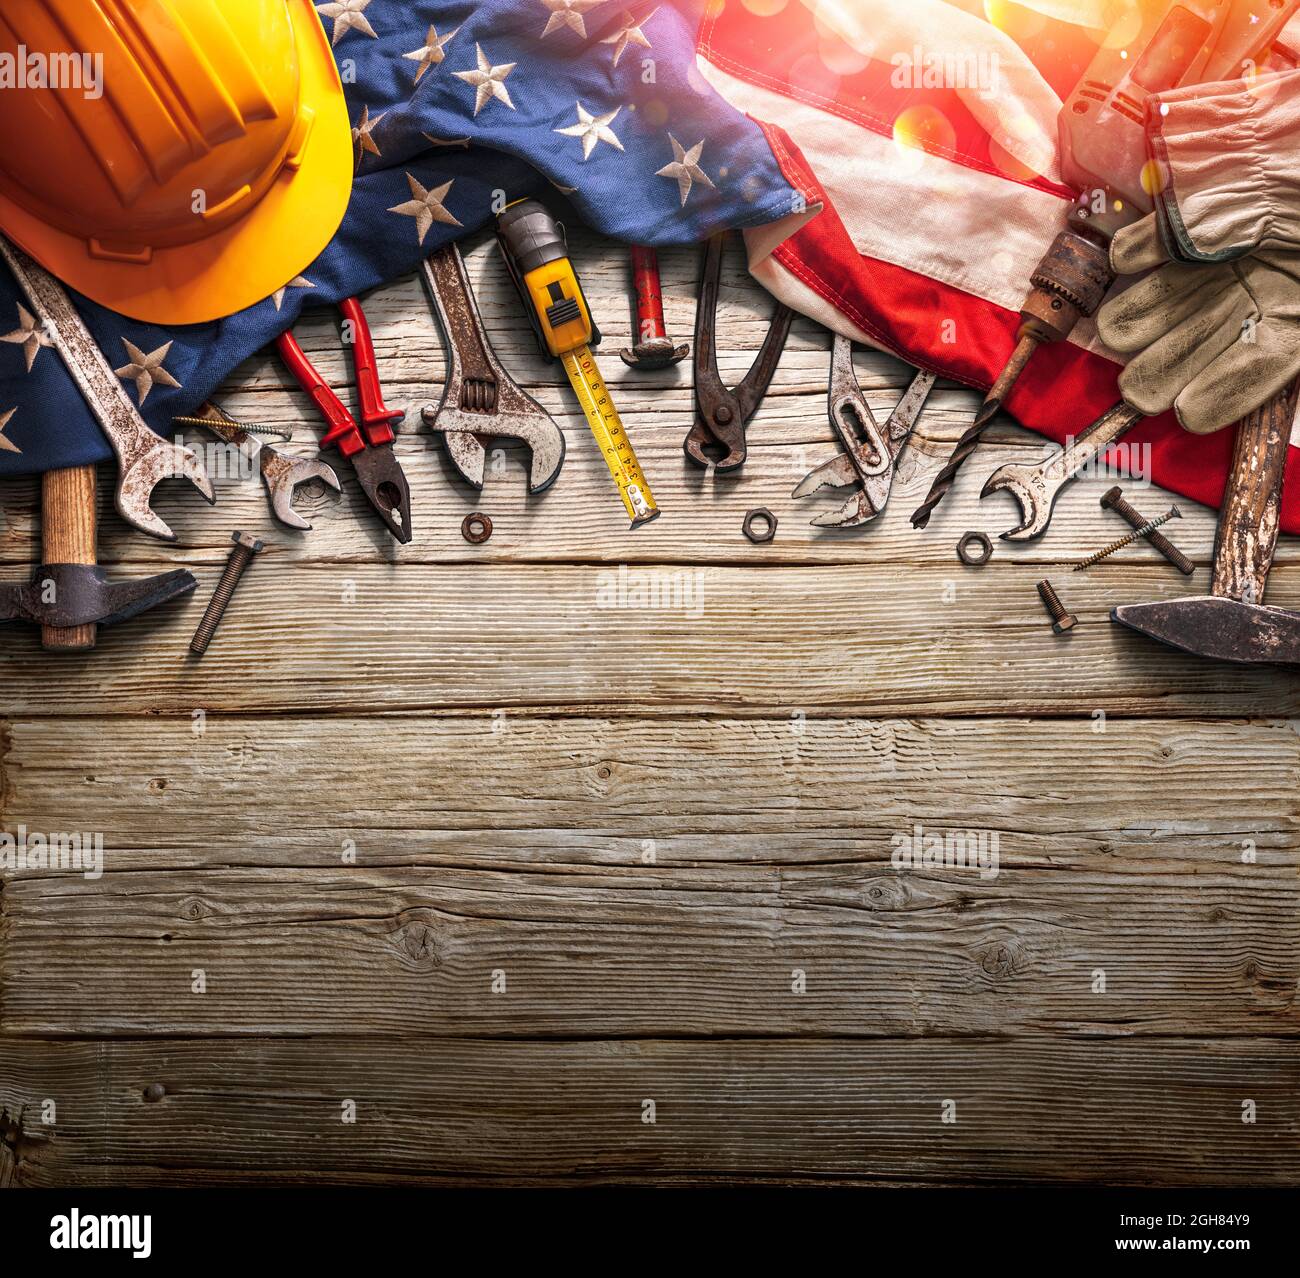 Día del Trabajo - Fiesta Nacional - Herramientas Mecánicas y EE.UU. Bandera sobre el fondo de madera Foto de stock